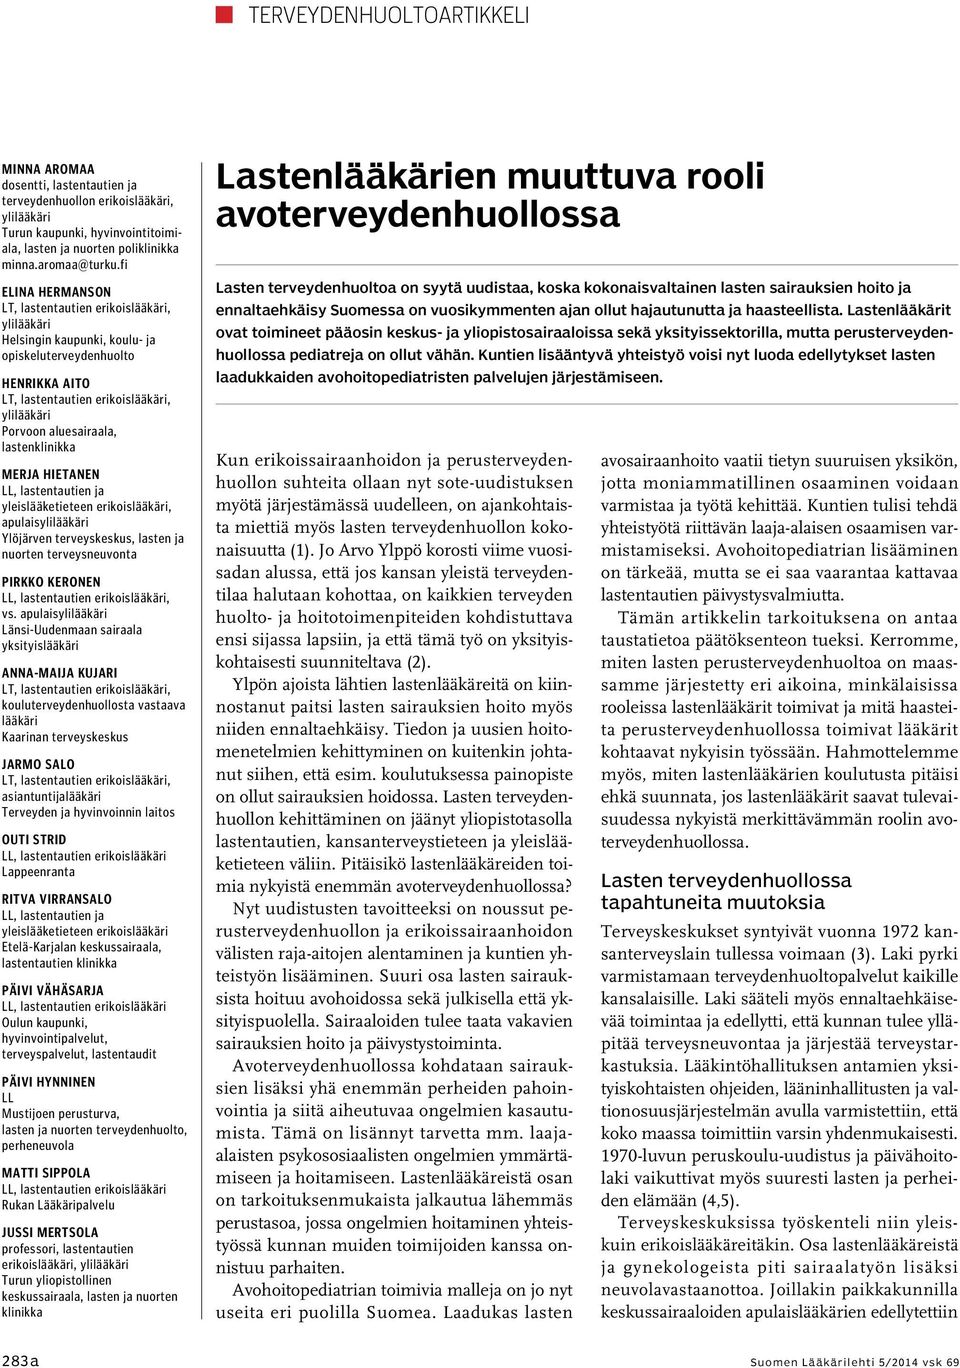 apulais Ylöjärven terveyskeskus, lasten ja nuorten terveysneuvonta Pirkko Keronen, vs.